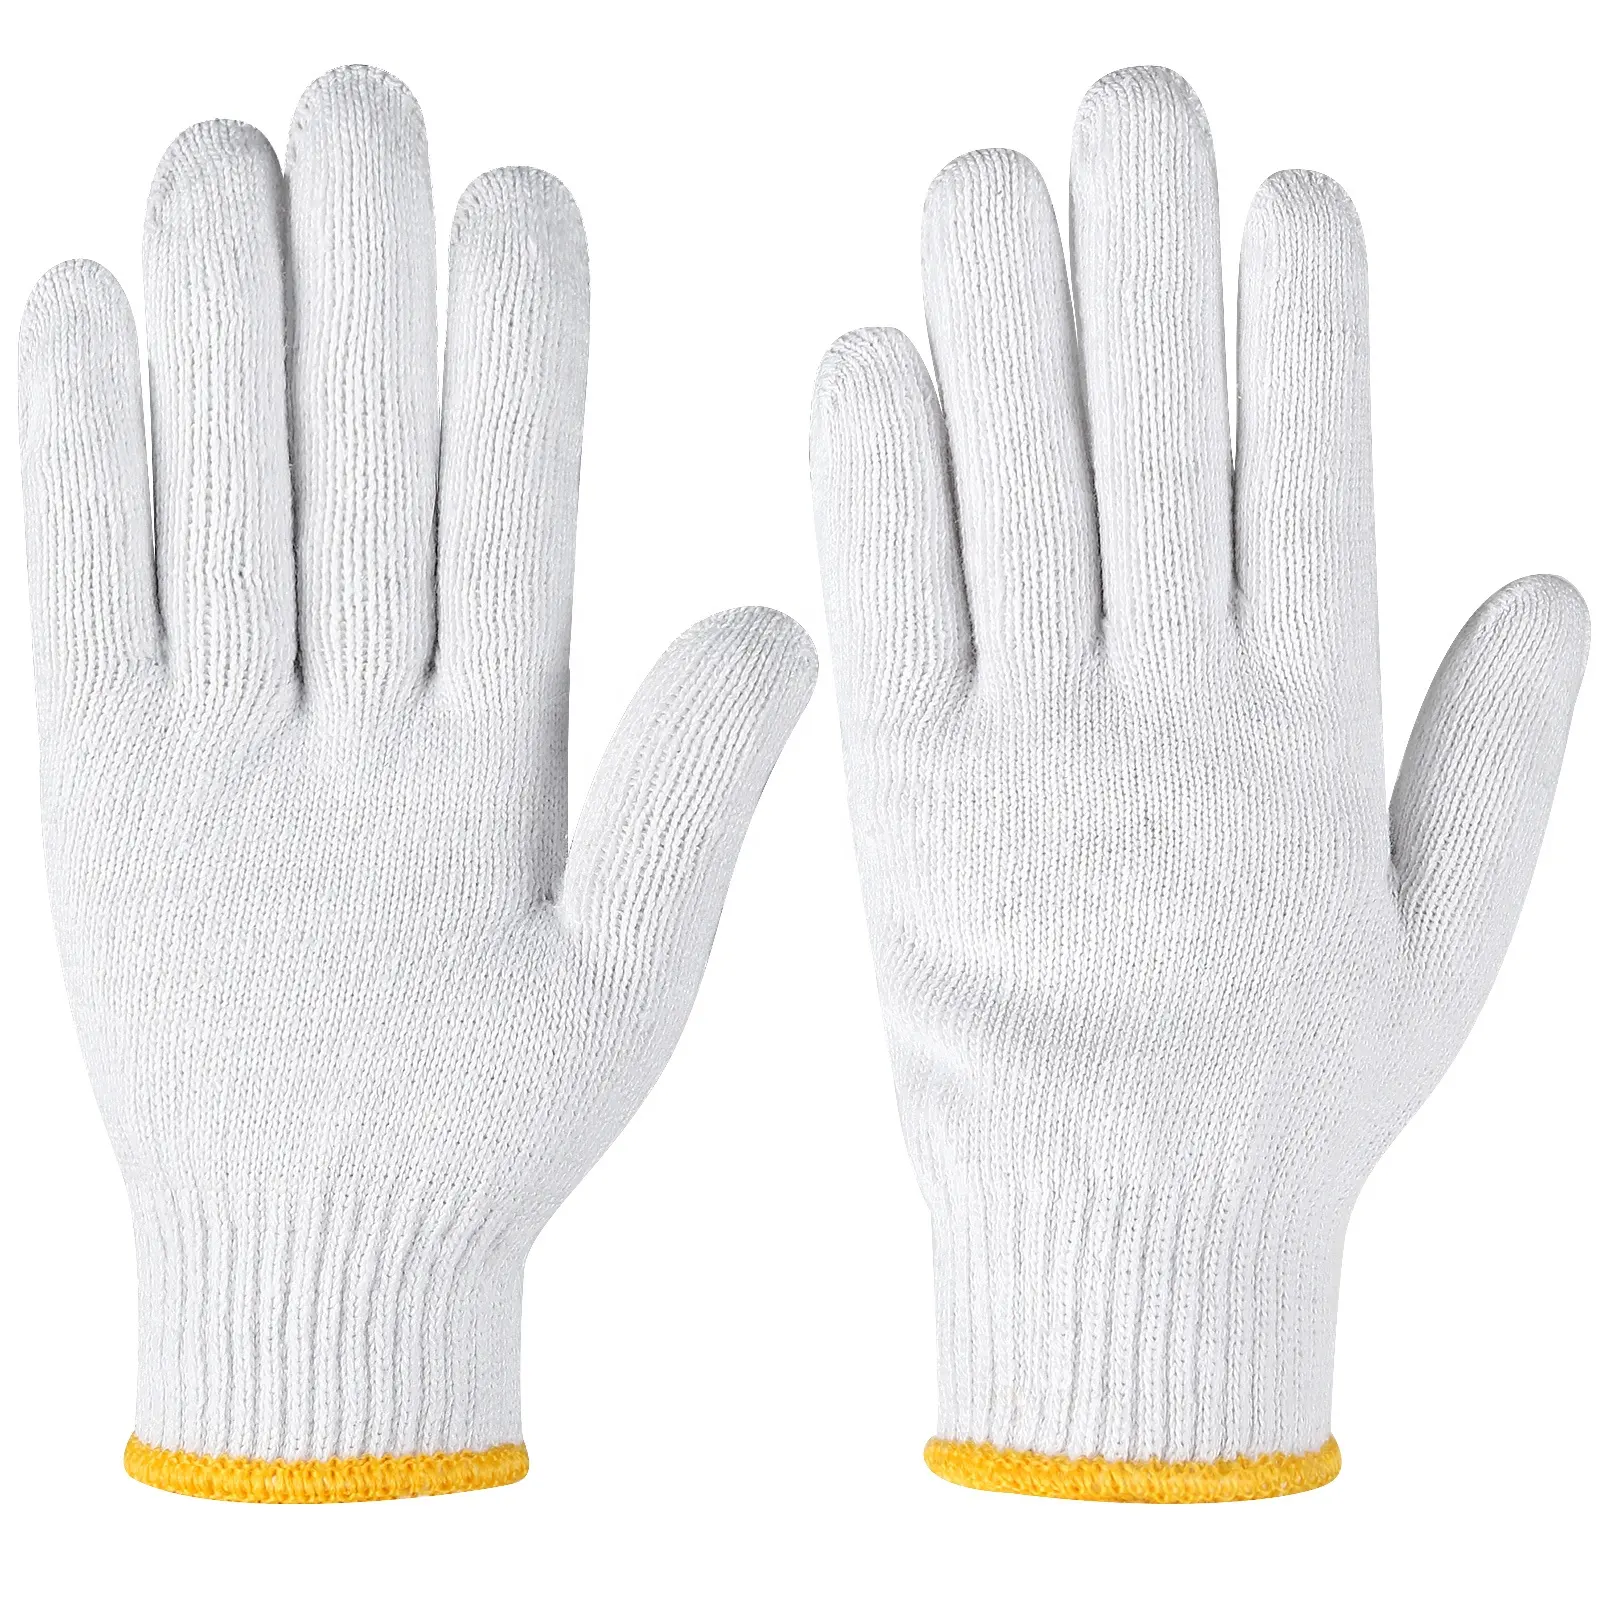 Gant tricoté blanc blanchi naturel de calibre 7/10 gants en coton de sécurité pour la construction de travaux